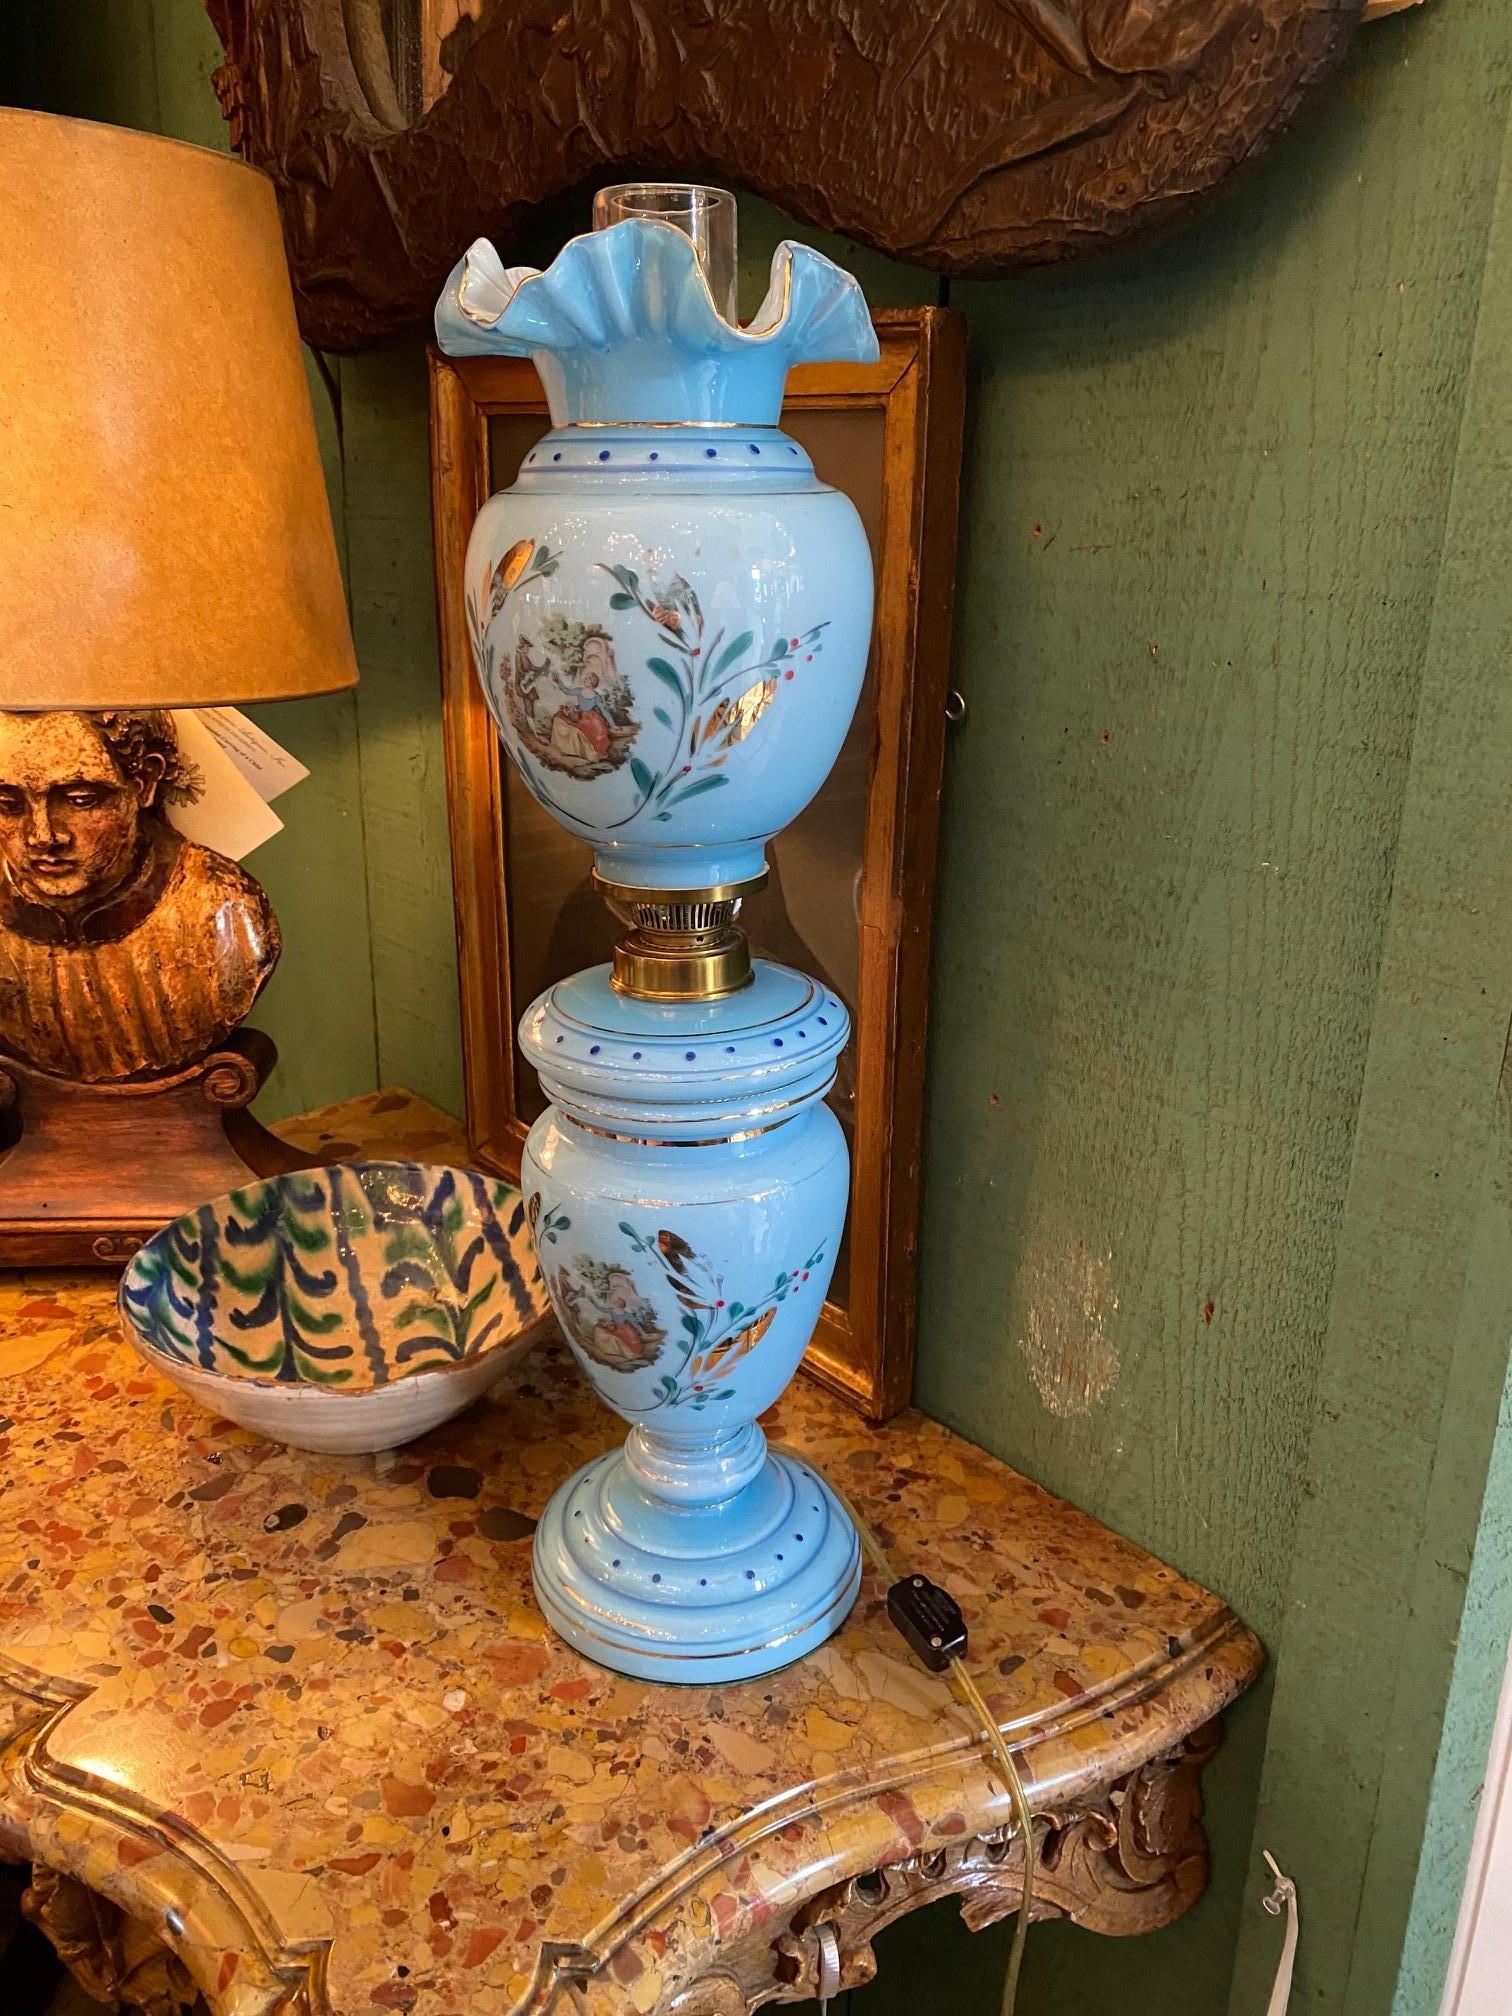 Rare verre opalin translucide du début du 19e siècle. Lampe à pétrole d'époque Charles X transition Louis Philippe. Bleu layette avec de l'or et un tableau peint à la main à l'apogée de l'époque romantique dans les années 1800.
Depuis l'âge du fer